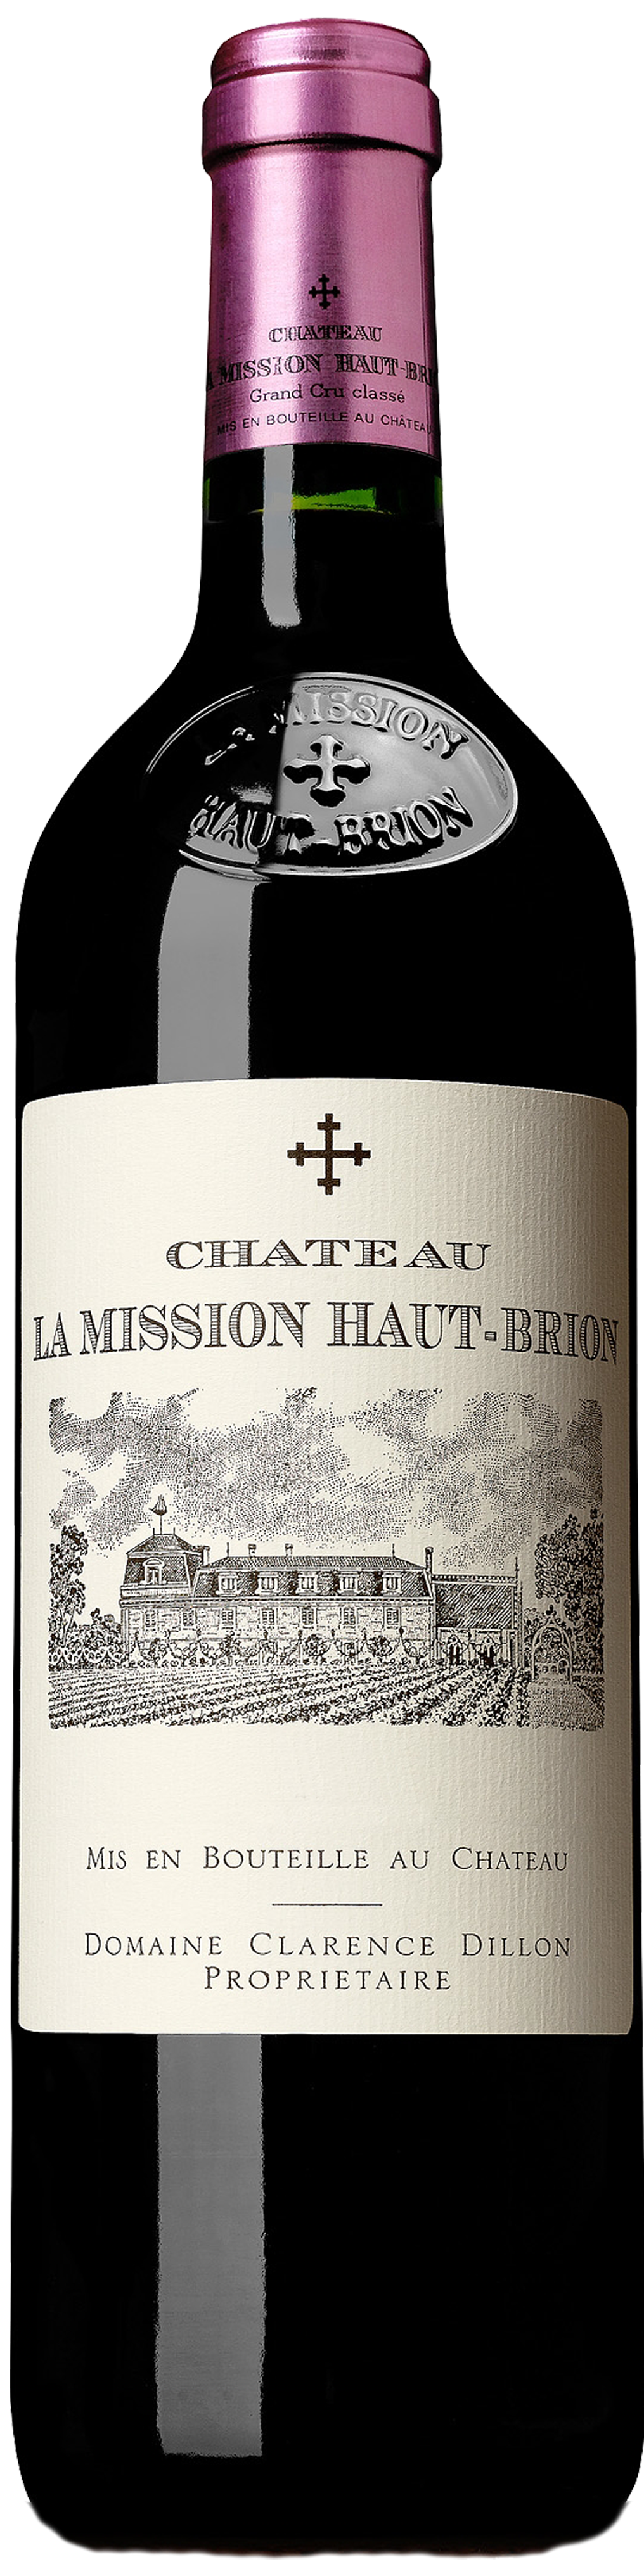 Bottle shot of 2000 Château La Mission Haut Brion, Cru Classé Graves